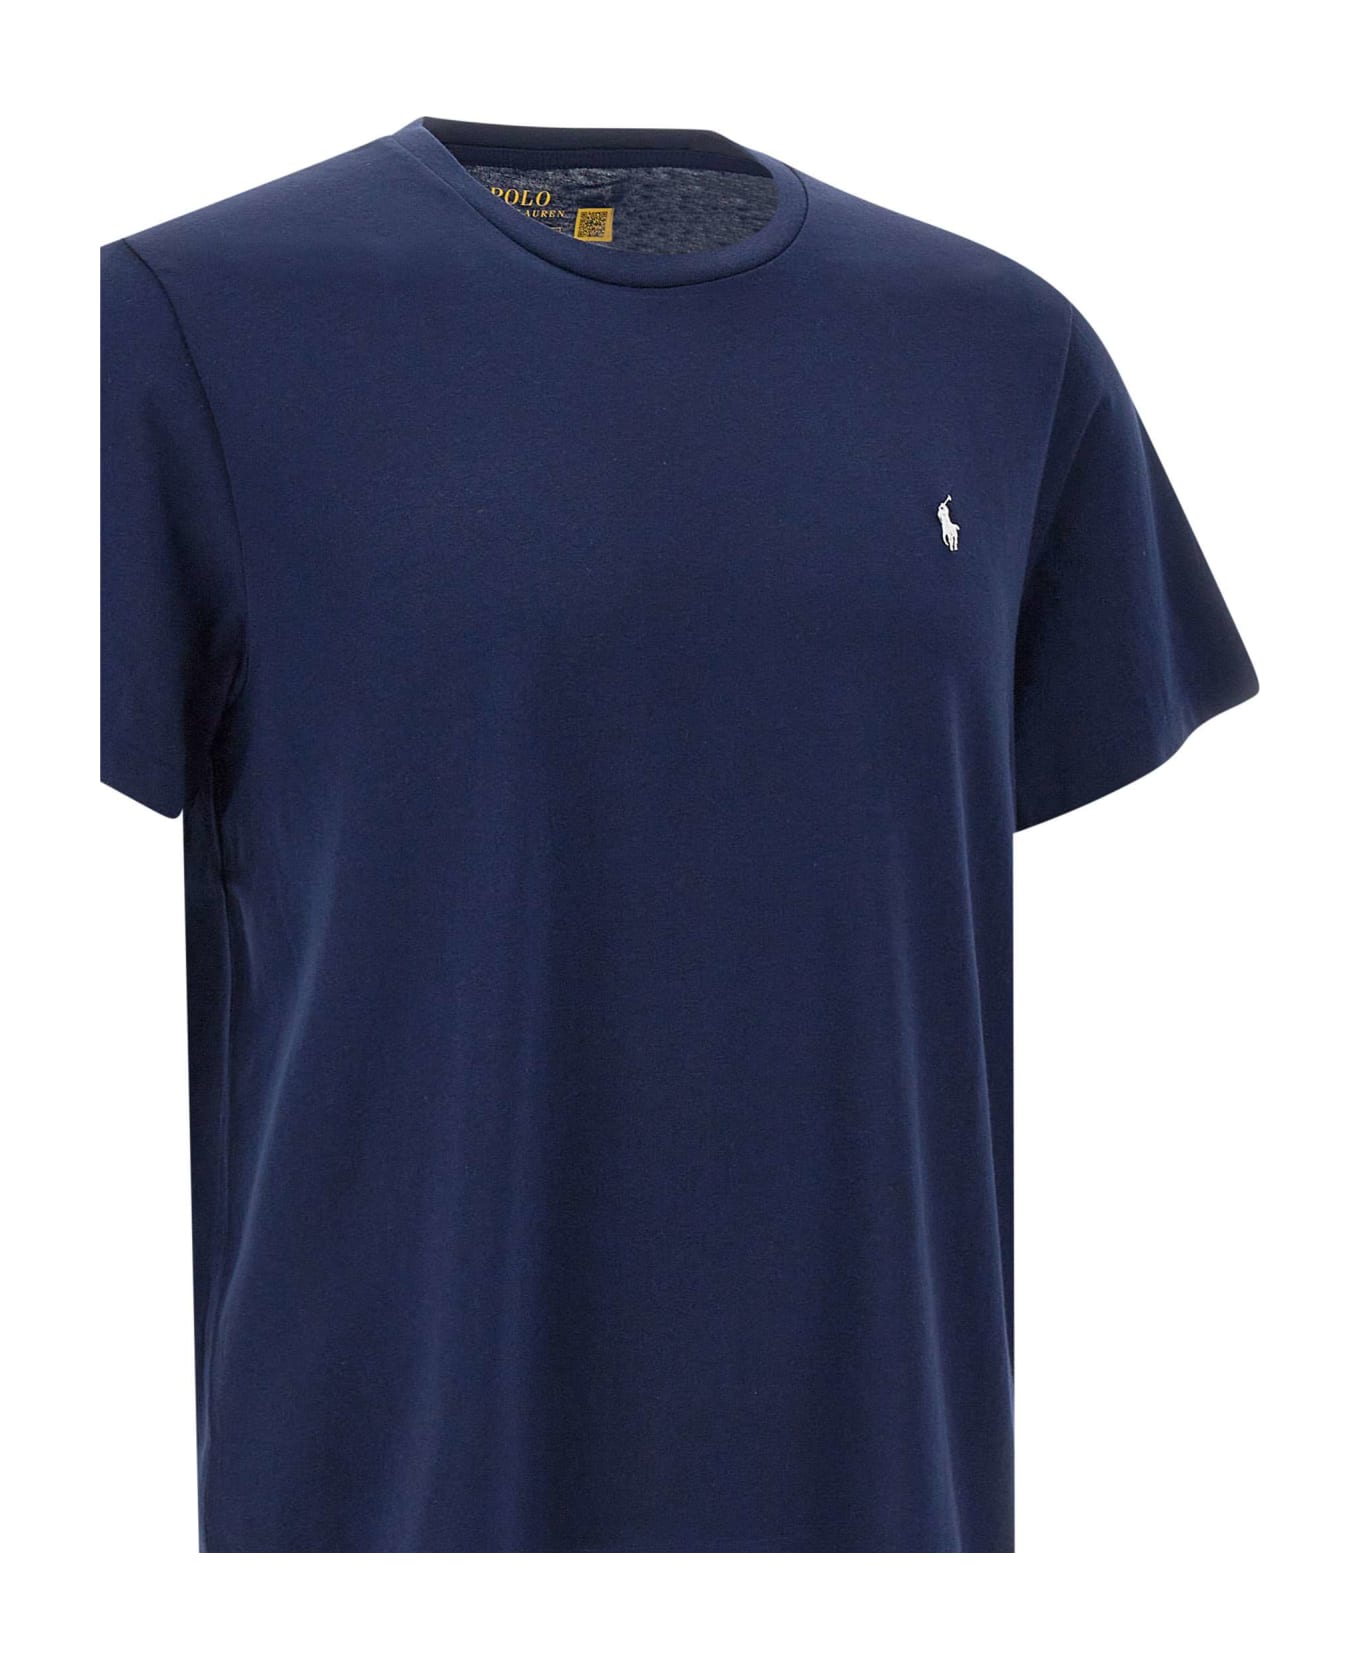 Polo Ralph Lauren "core Replen" Cotton T-shirt - BLUE シャツ